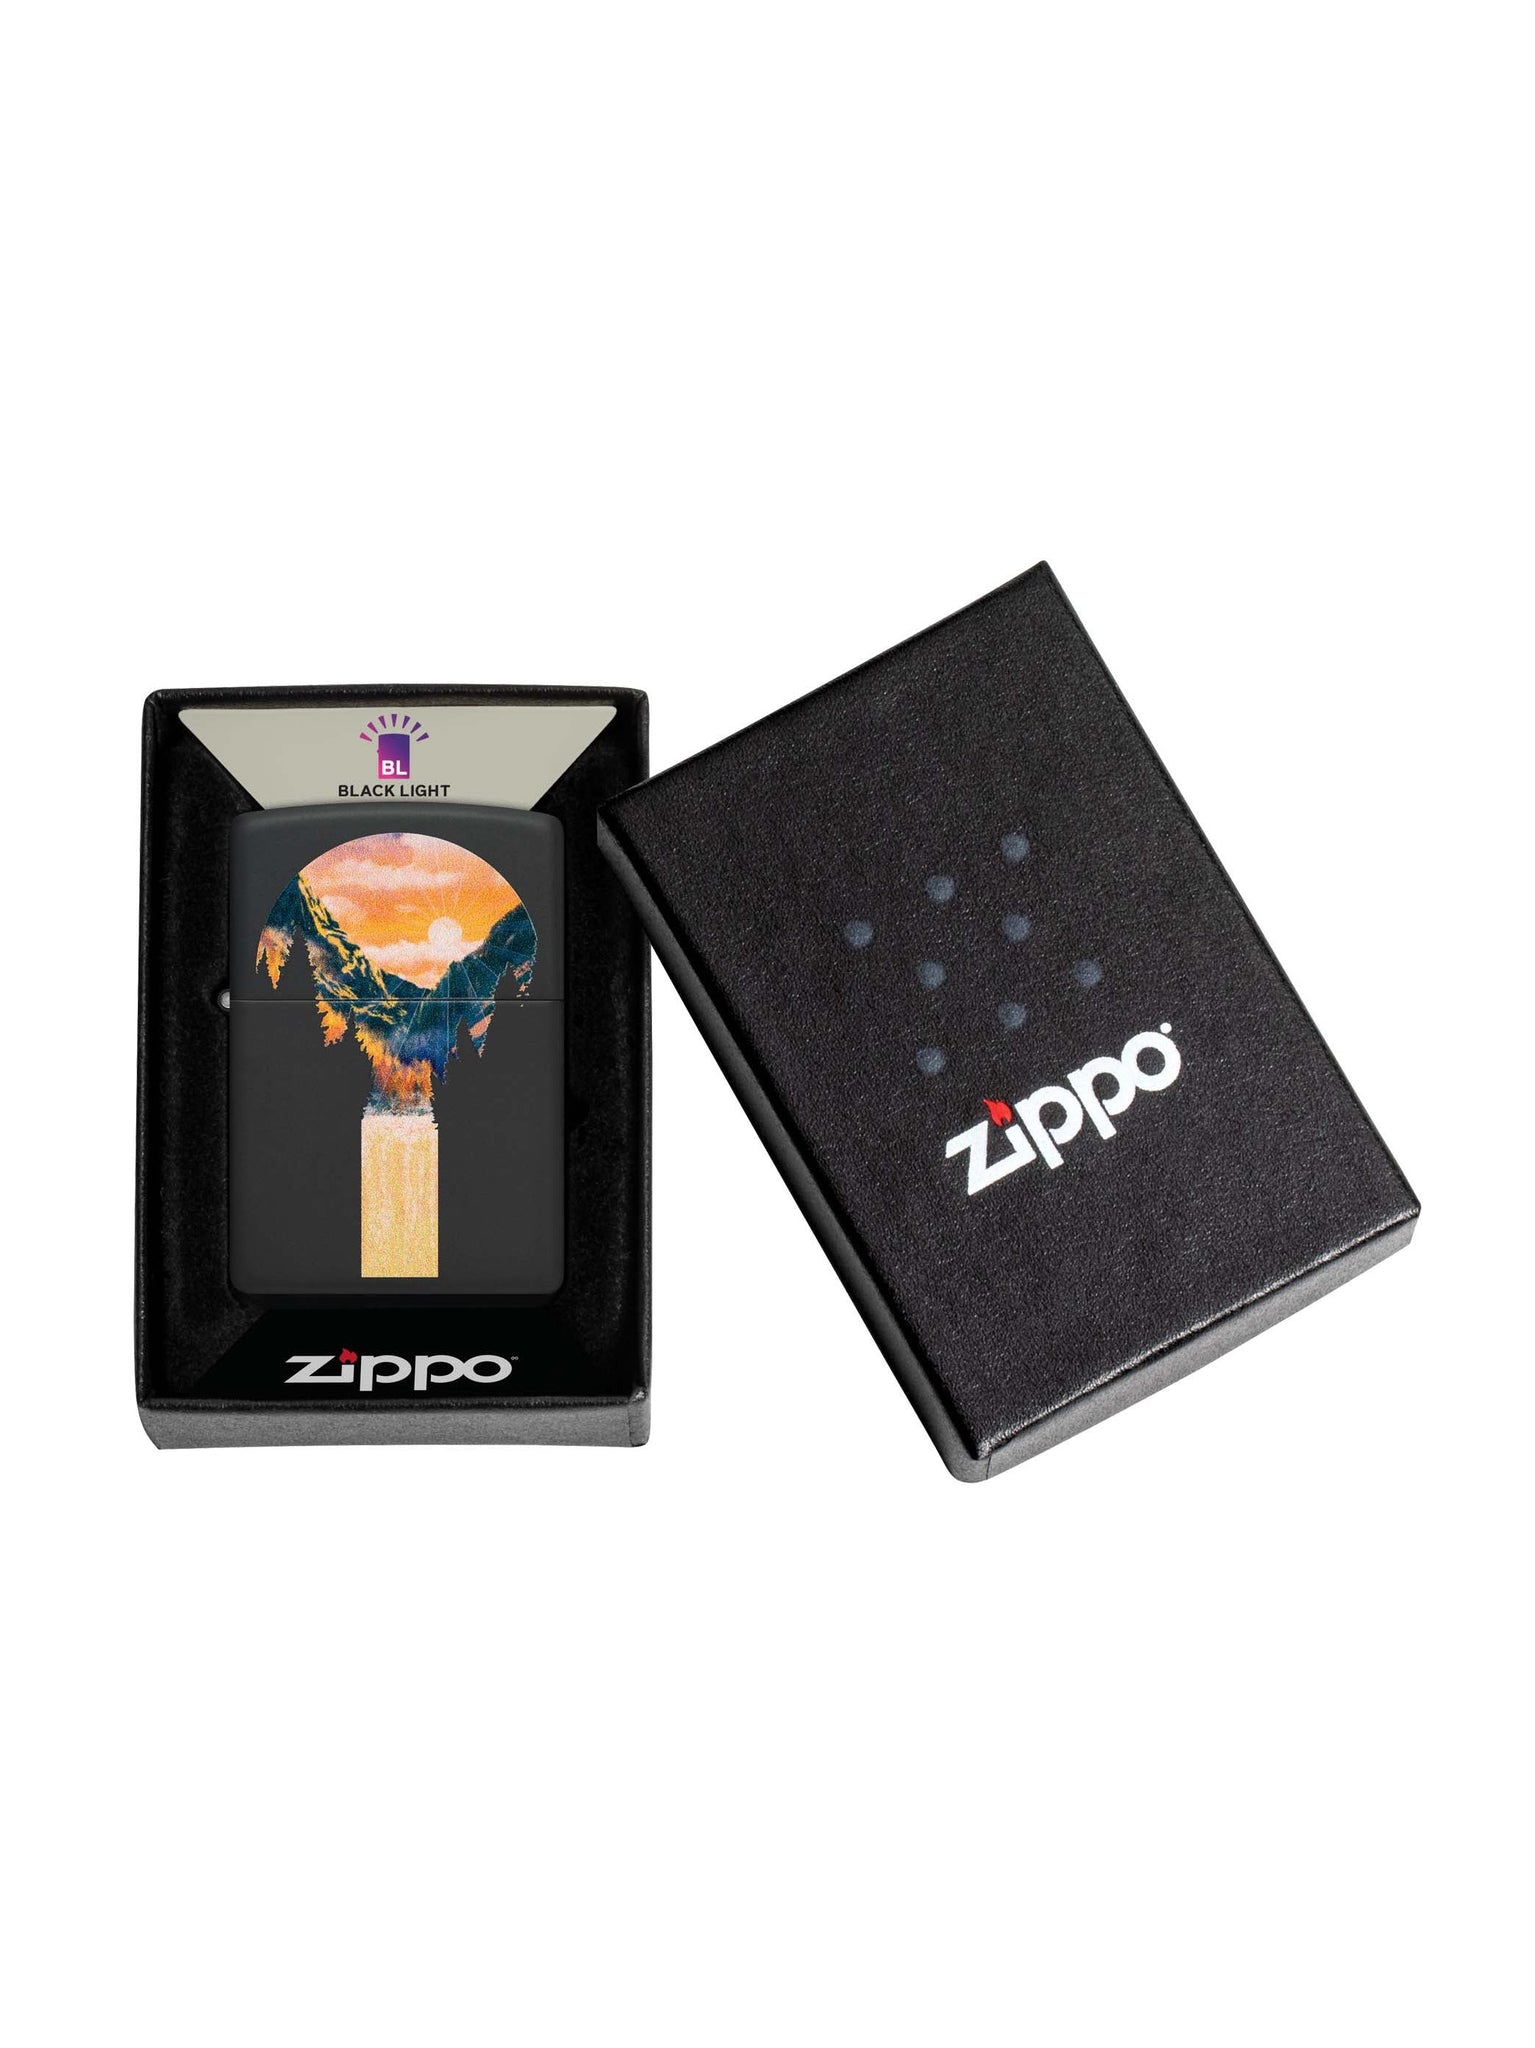 Zippo Lighter: Mountain Scene, Black Light - Black Matte 48676